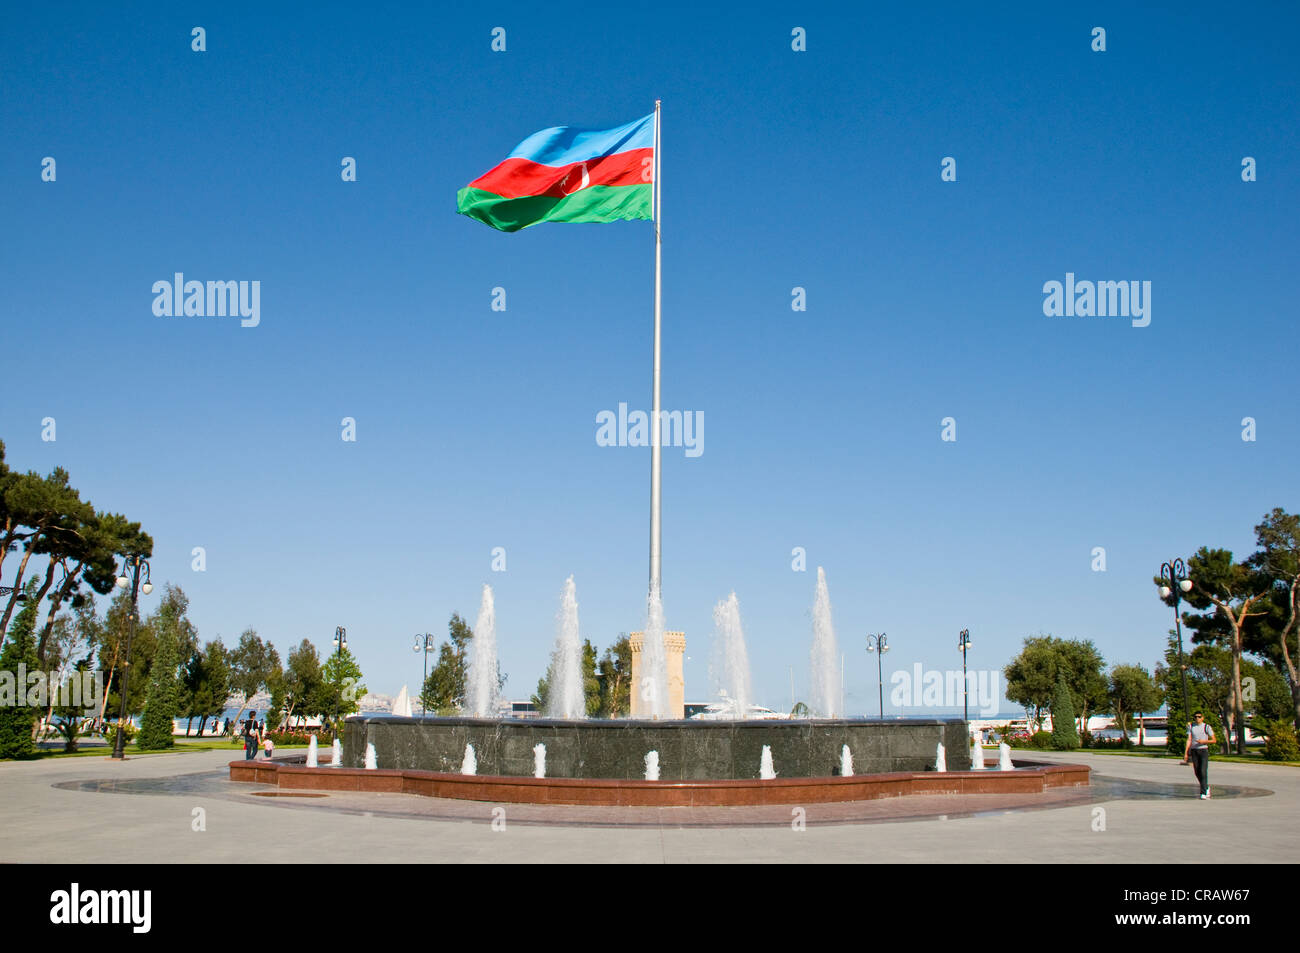 Въехать в азербайджан. Баку. Въезд в Баку. Огни Баку. Покажи флаг Армении фото.